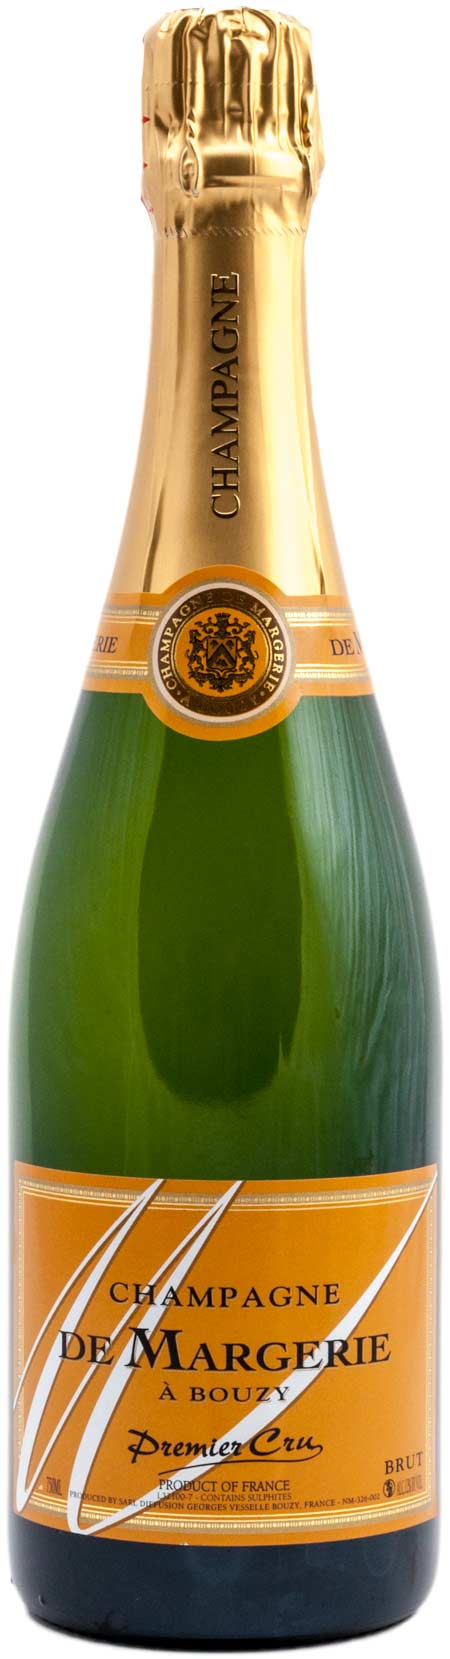 Champagne de Margerie á Bouzy - Premier Cru - Brut